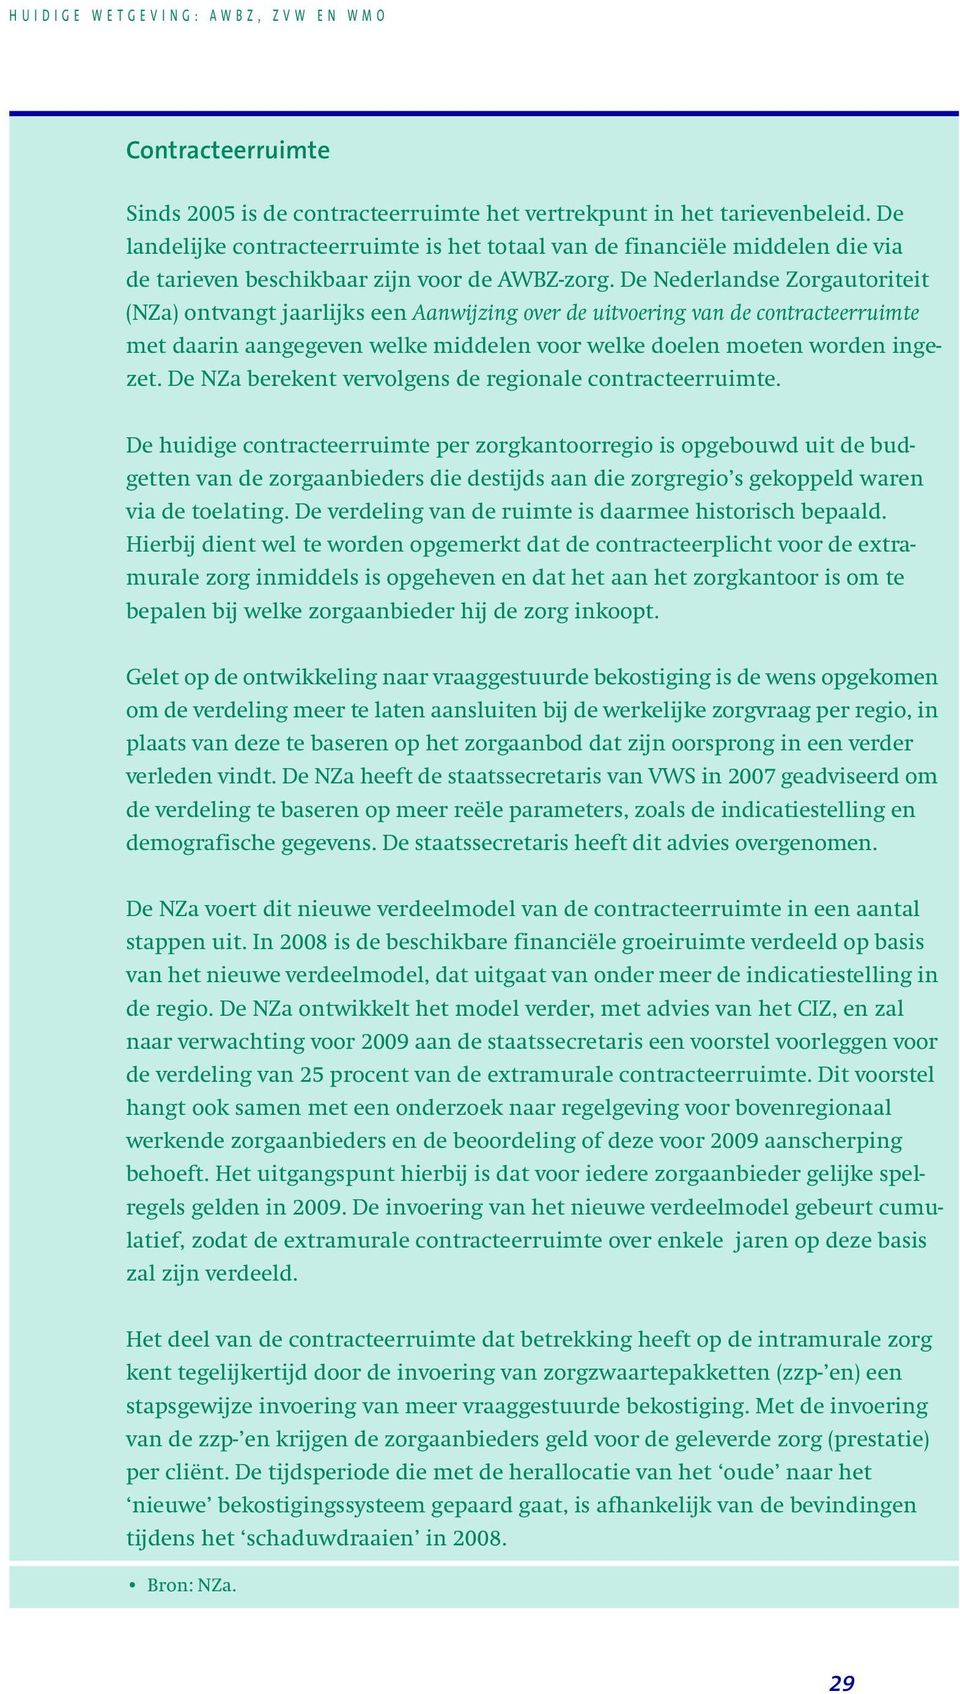 De Nederlandse Zorgautoriteit (NZa) ontvangt jaarlijks een Aanwijzing over de uitvoering van de contracteerruimte met daarin aangegeven welke middelen voor welke doelen moeten worden ingezet.